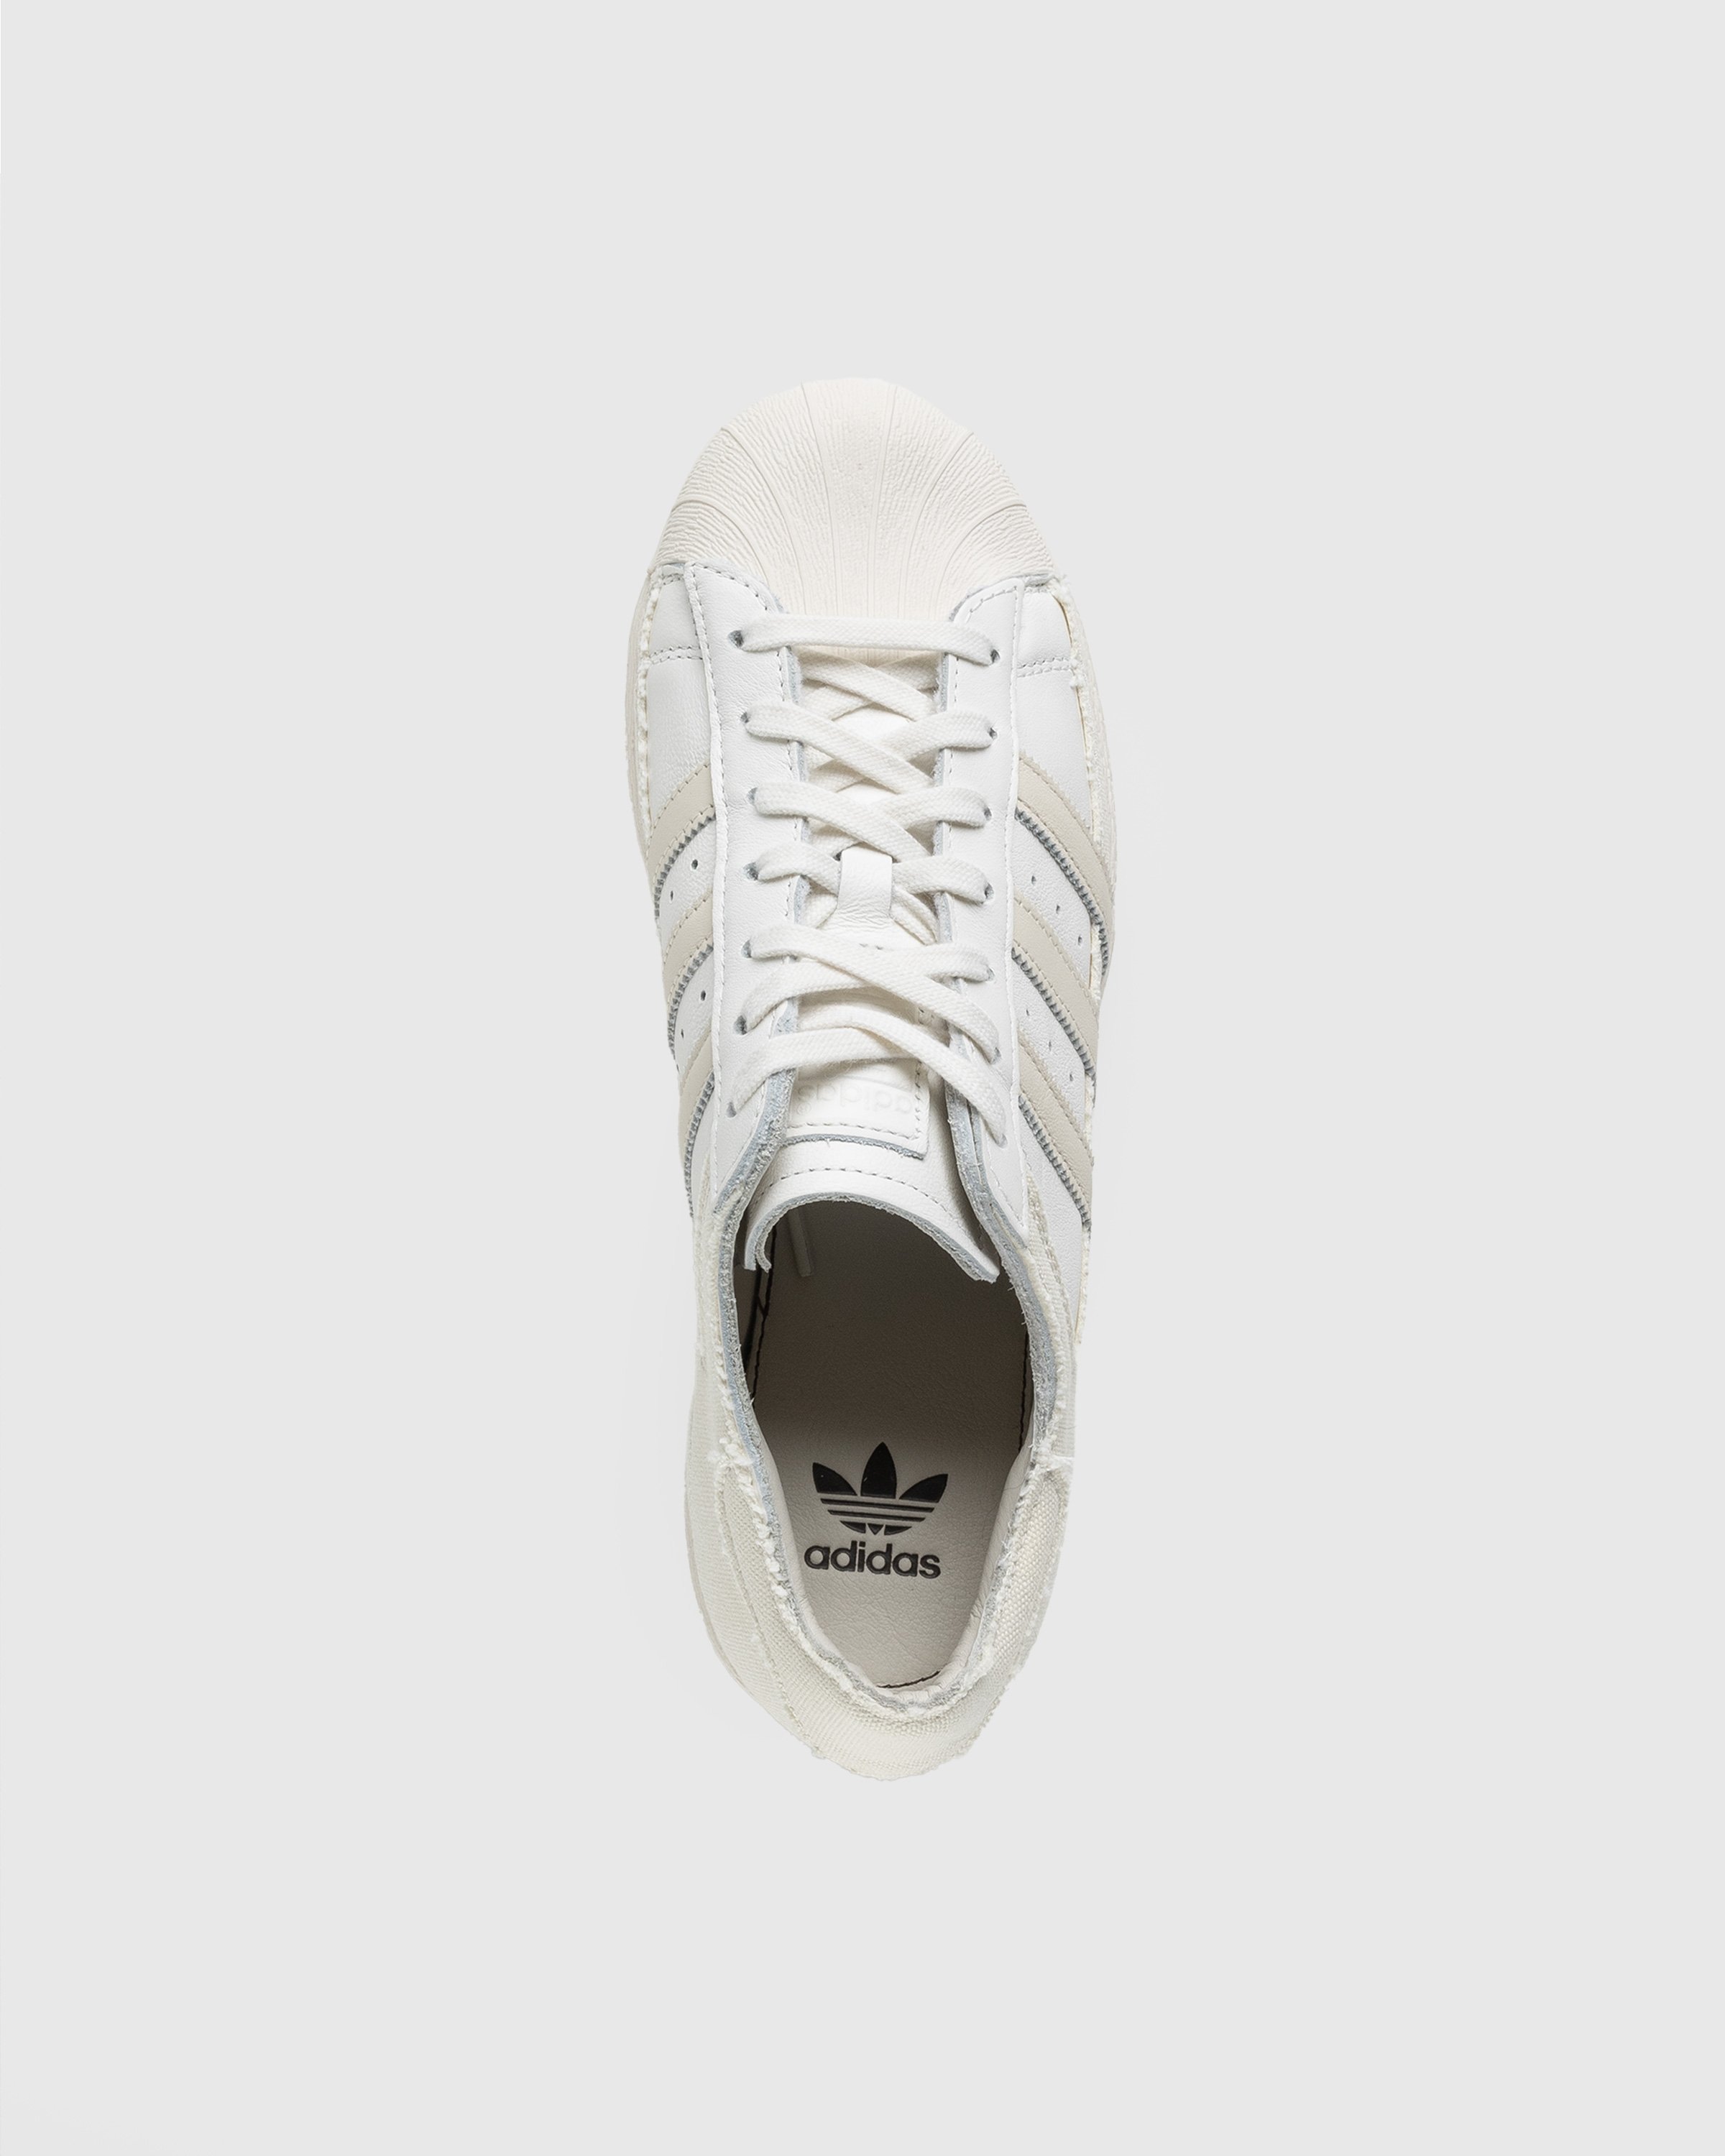 Adidas - Superstar 82 White/Beige - Footwear - Beige - Image 5